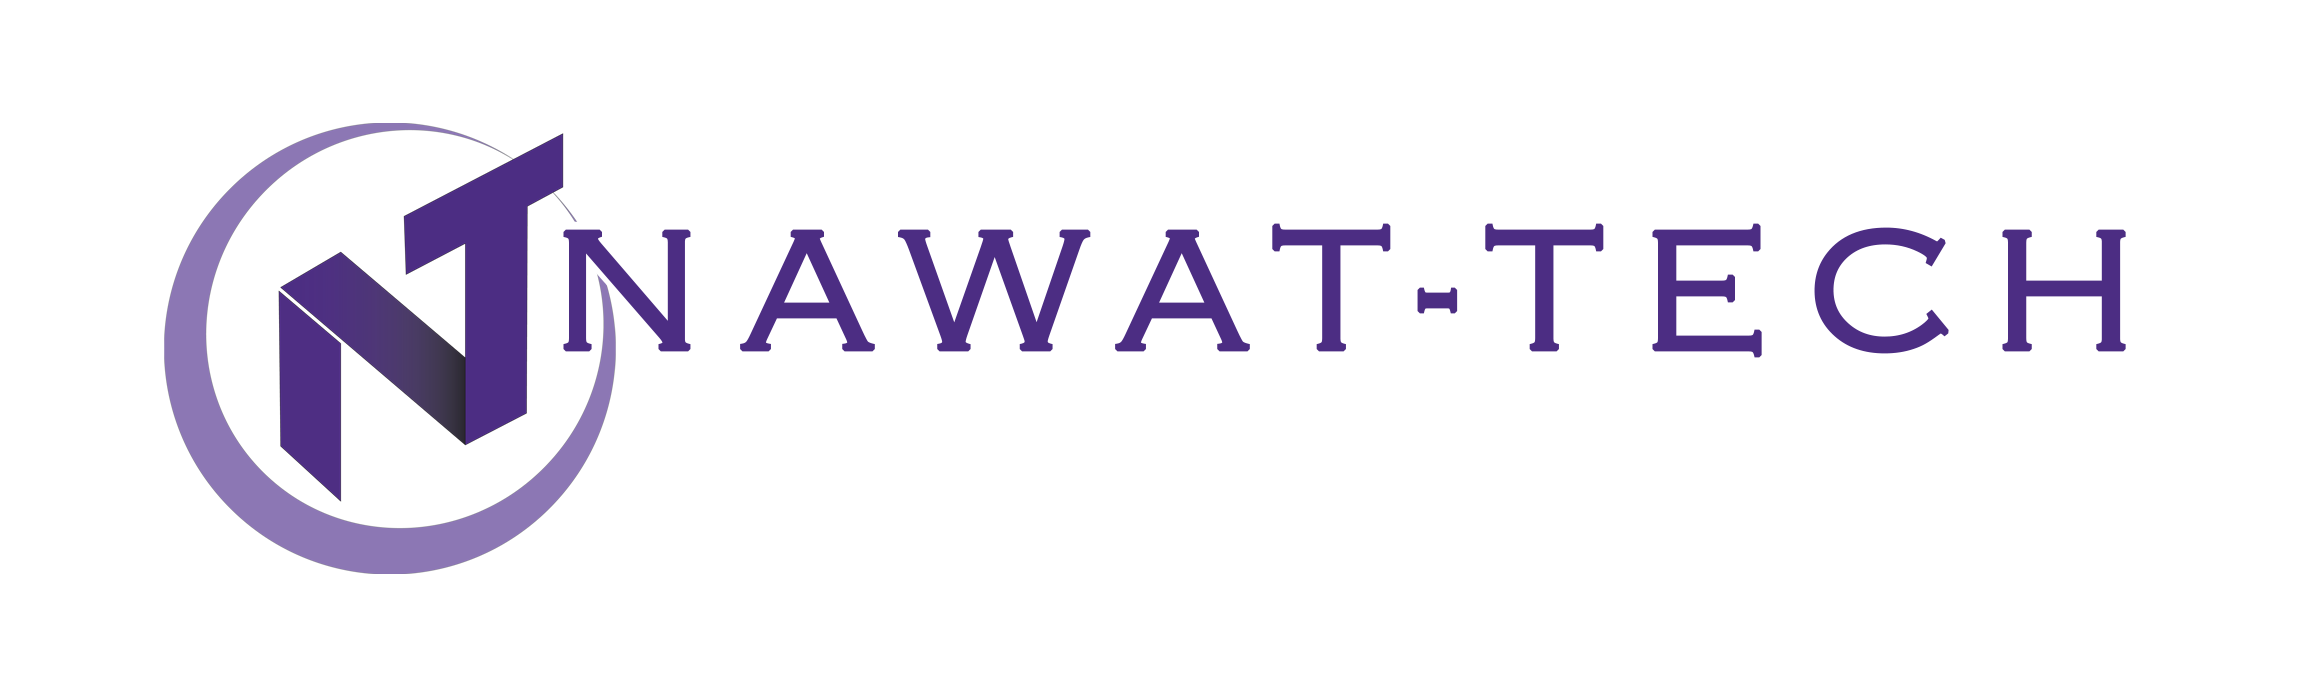 Nawat Tech